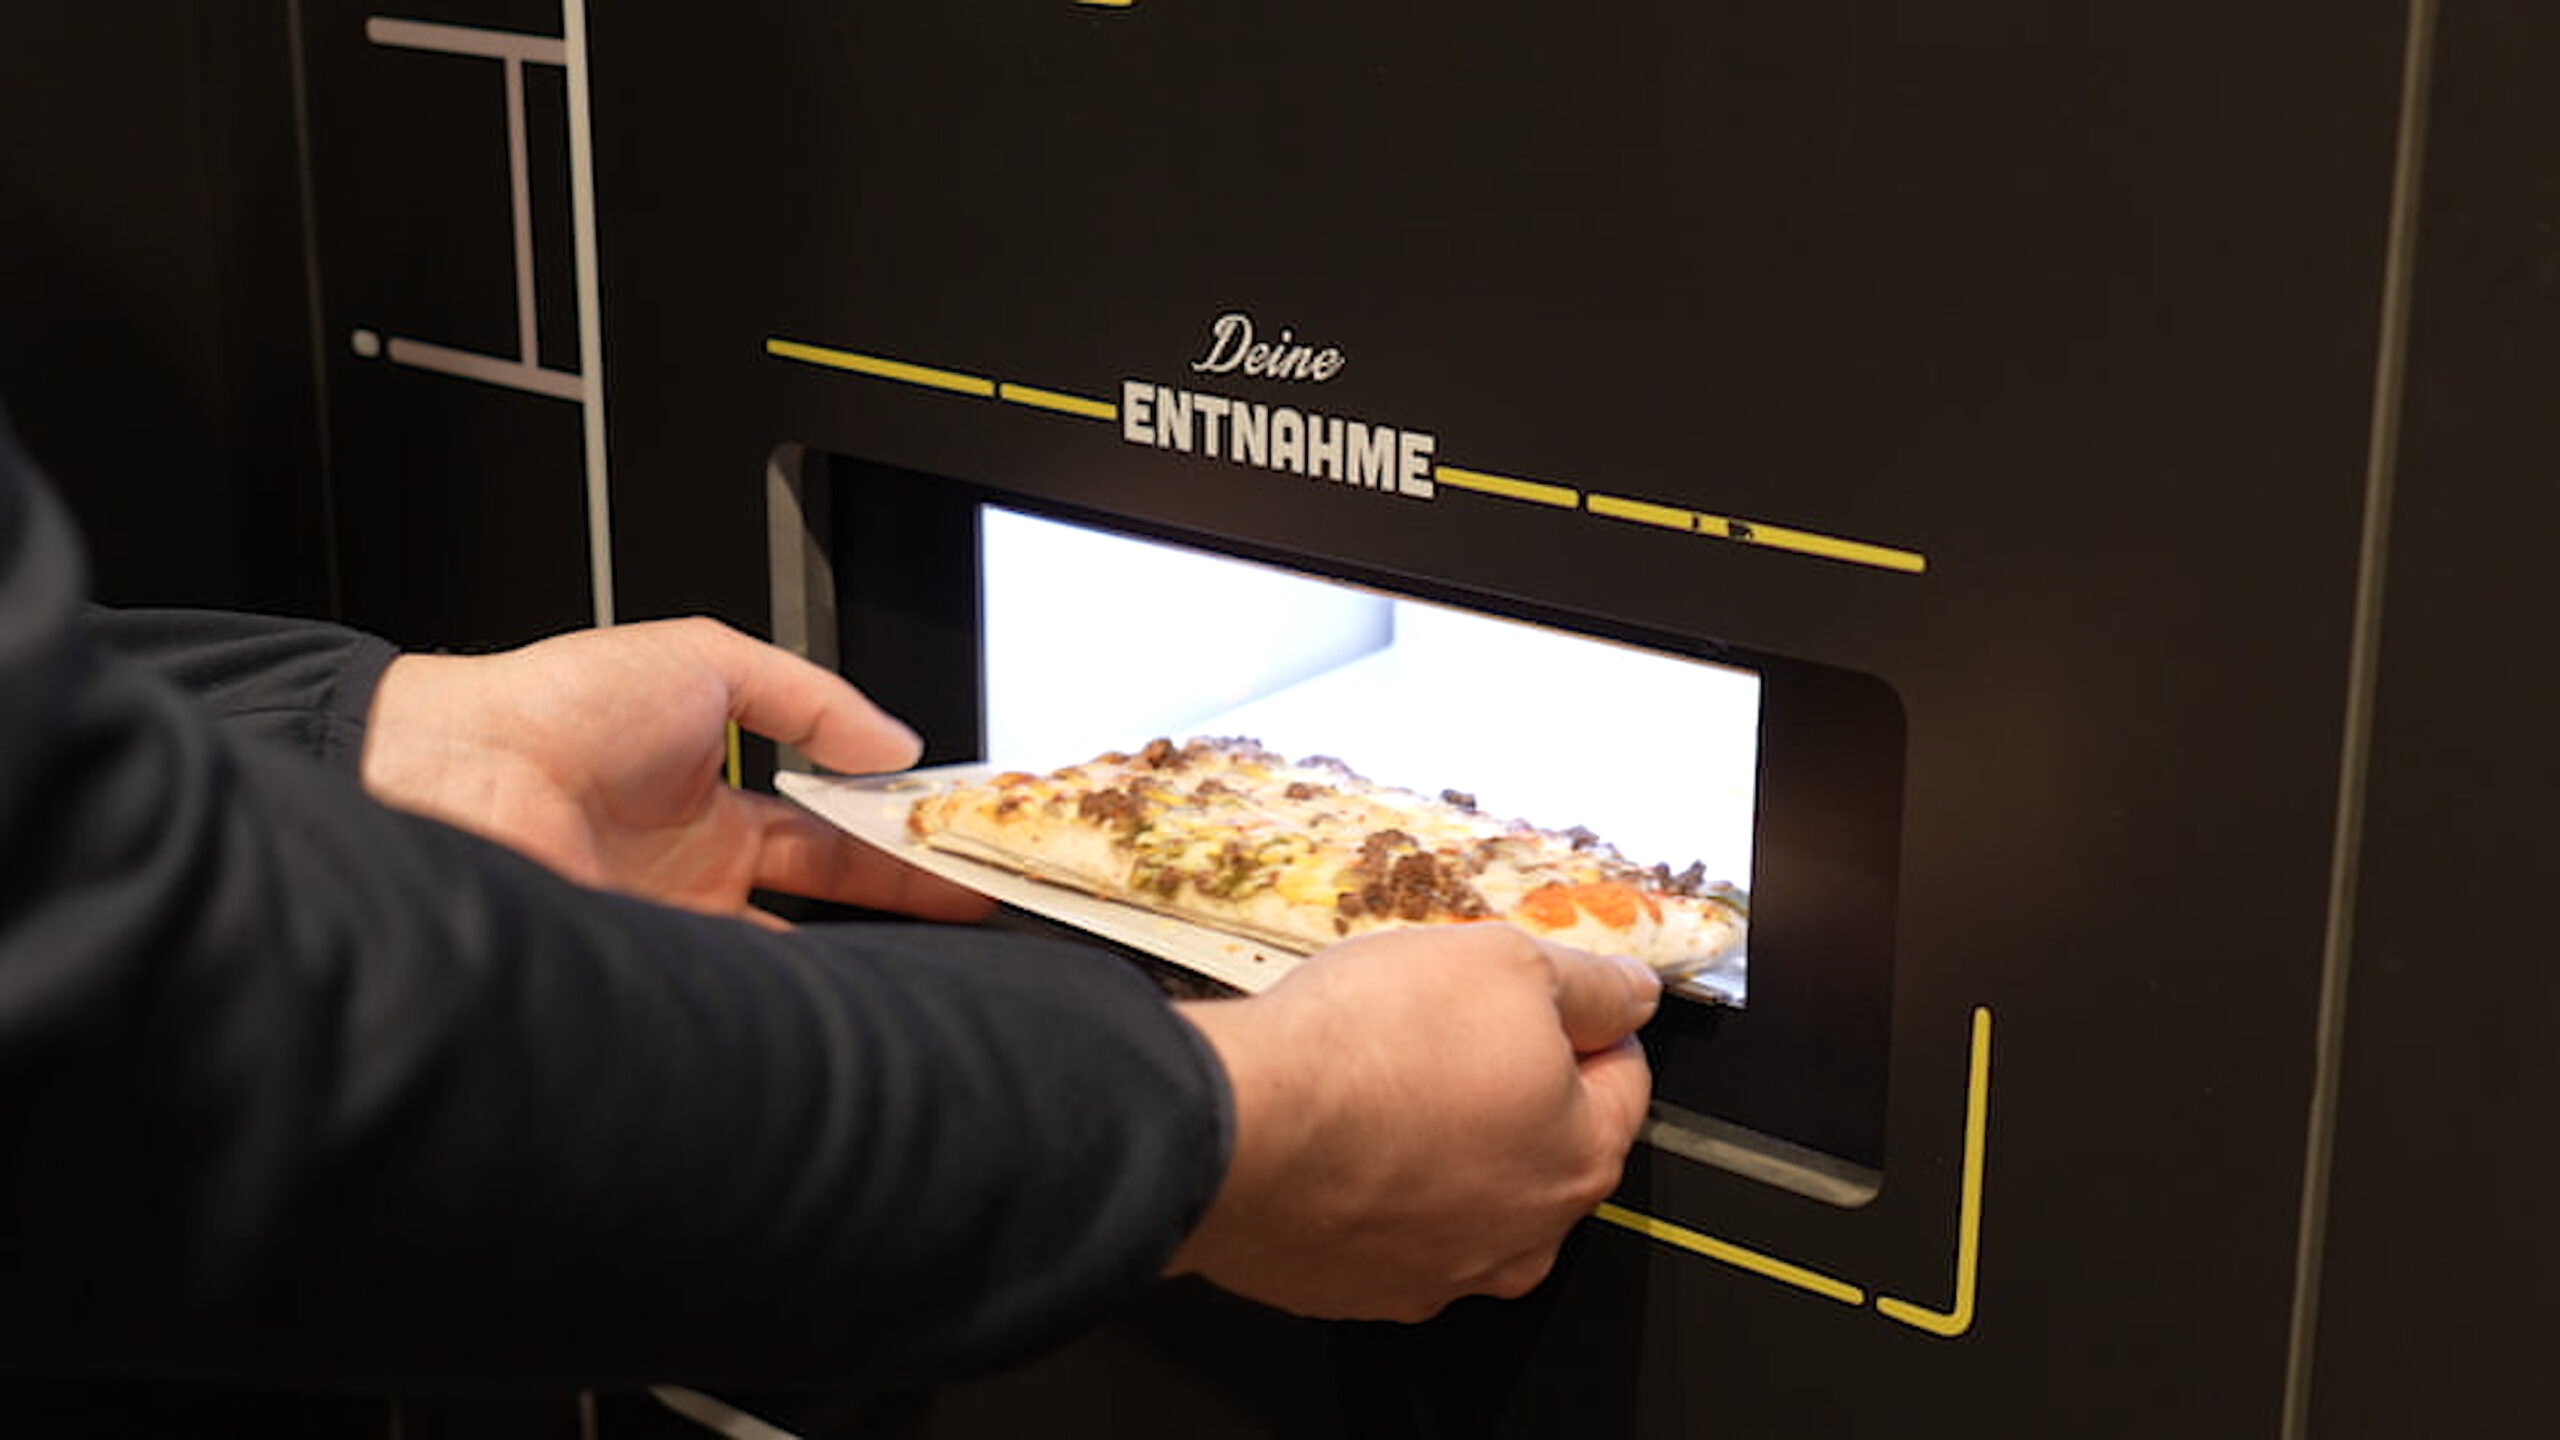 Ofenfrische Pizza aus dem Automaten möglich. mit BistroBox und Loxone